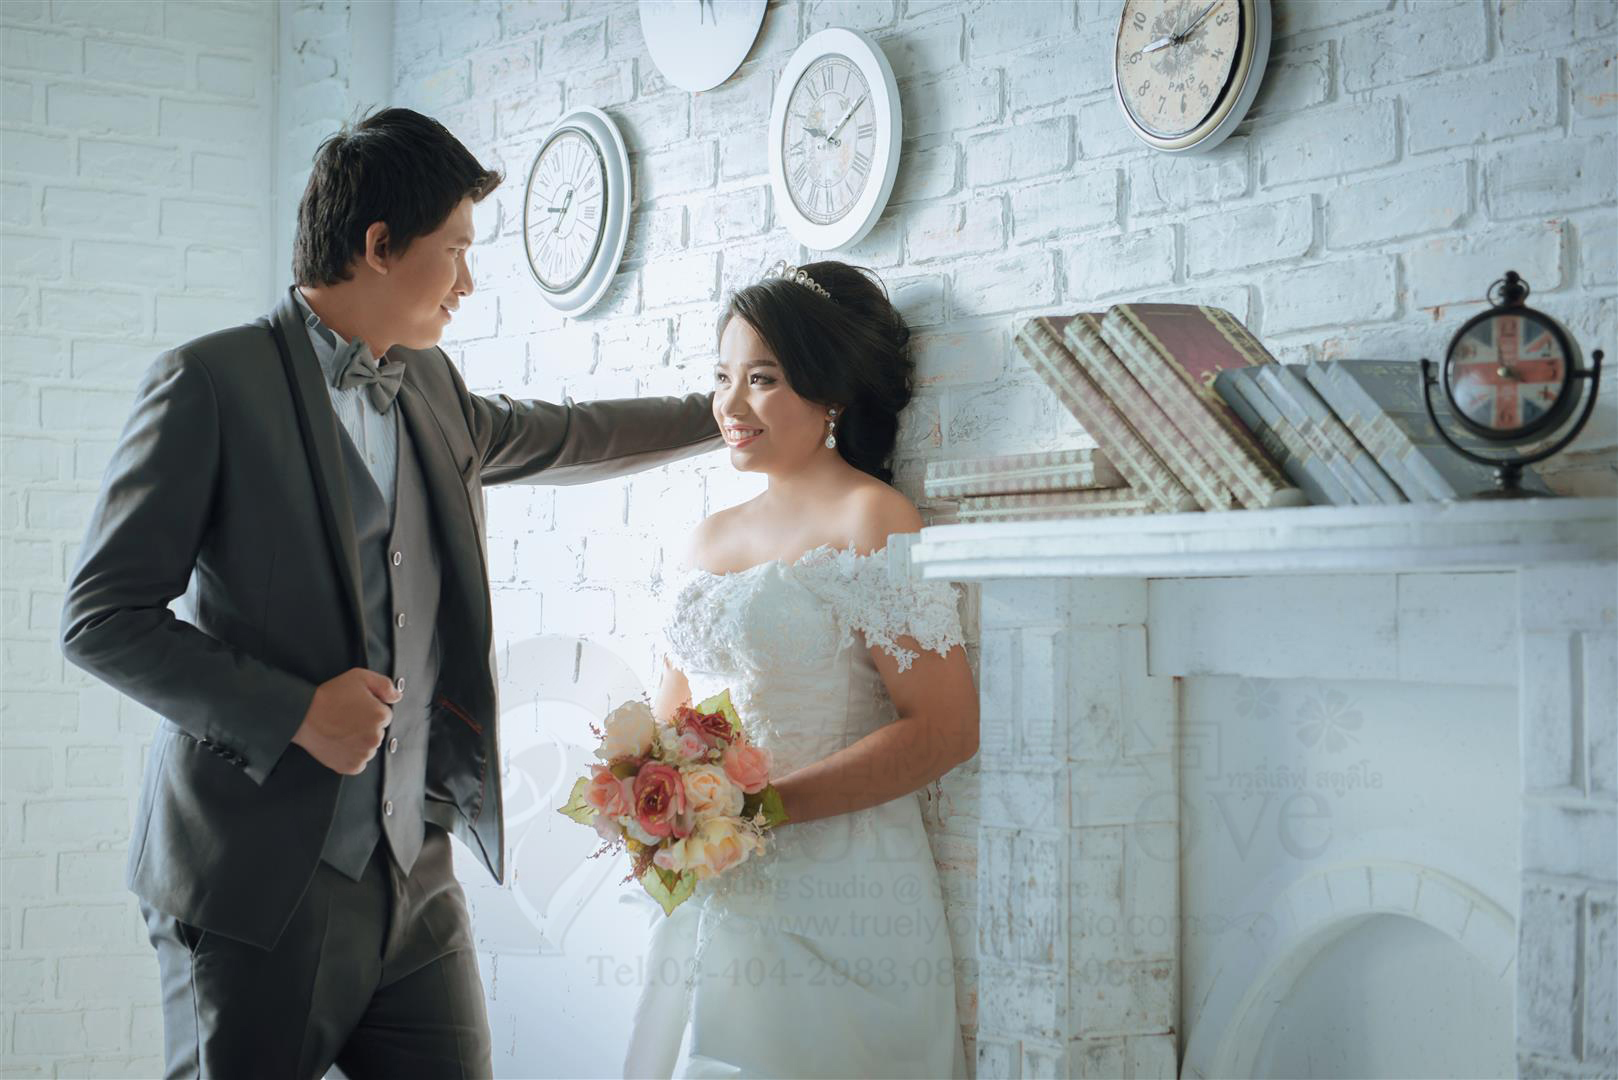 #ถ่ายรูปแต่งงาน #ถ่ายภาพ แต่งงาน #ถ่ายรูป แต่งงาน #ถ่ายรูปแต่งงานราคาถูก #ร้านถ่ายรูปแต่งงาน #สตูดิโอ ถ่ายรูปแต่งงาน